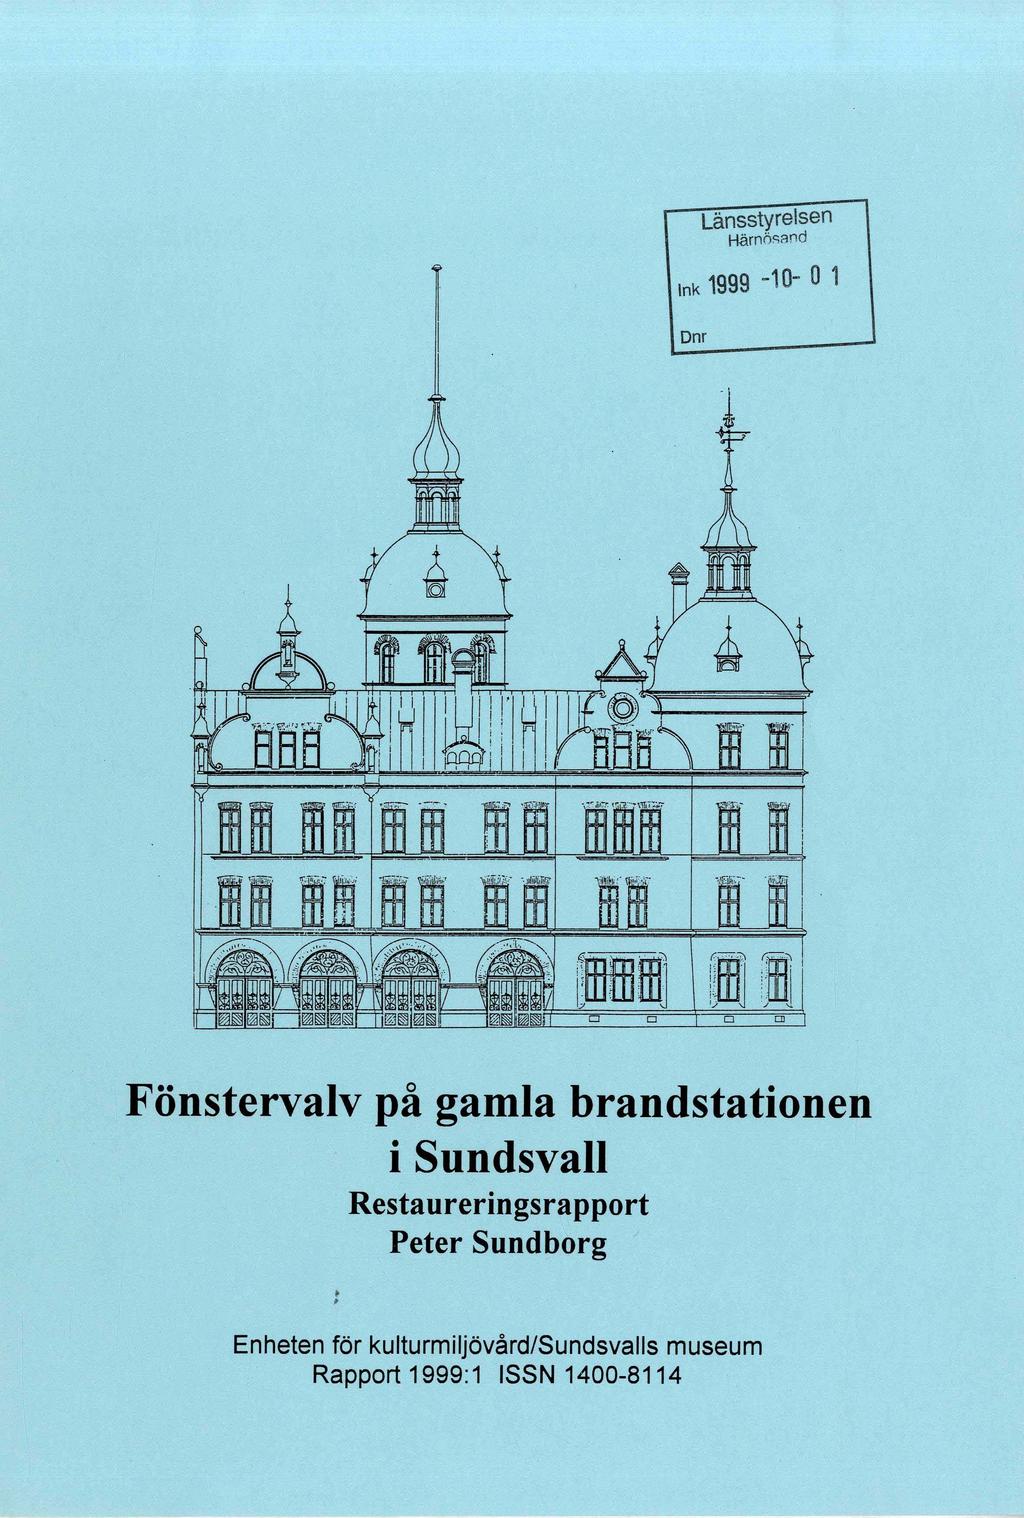 Länsstyrelsen Härnös8nd Ink 1999-10- O 1 Dnr Fönstervalv på gamla brandstationen i Sundsvall